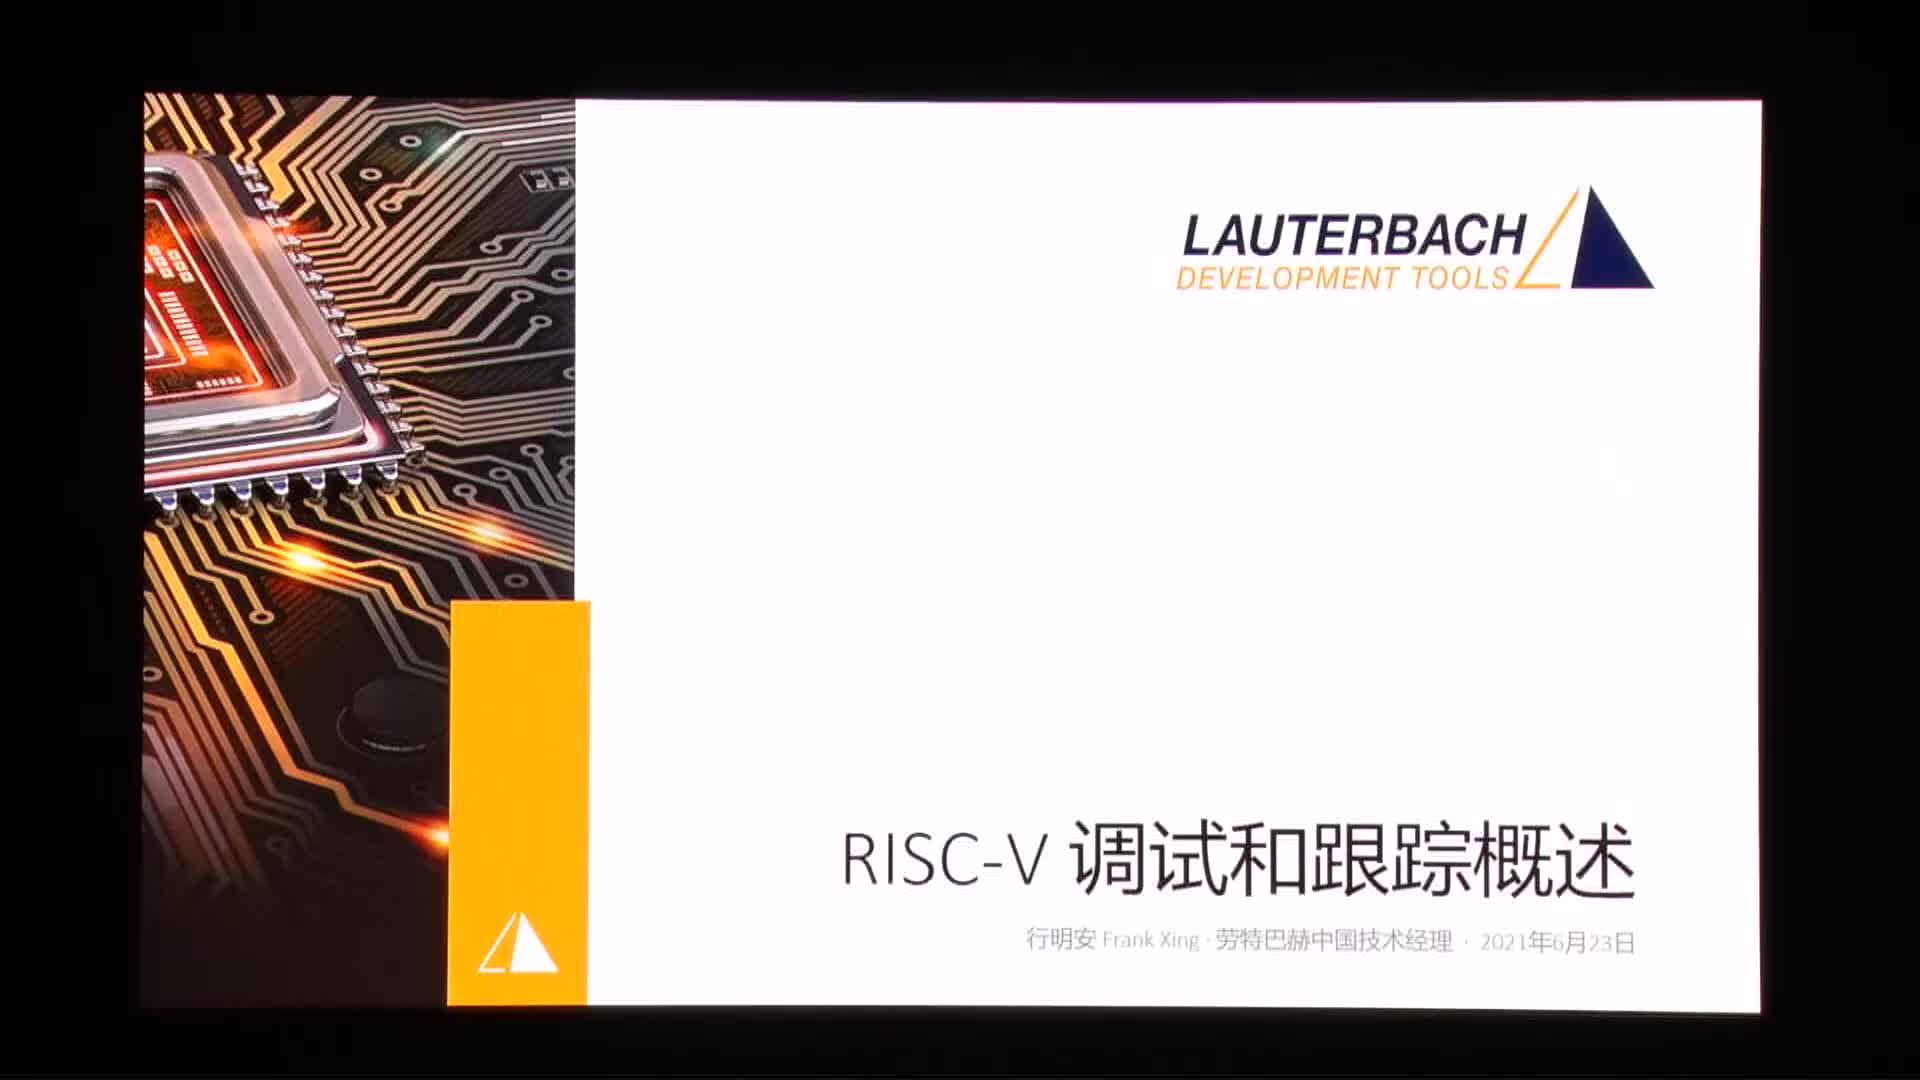 行明安@劳特巴赫 - RISC-V的调试与跟踪技术概述 - 第一届 RISC-V 中国峰会_batch